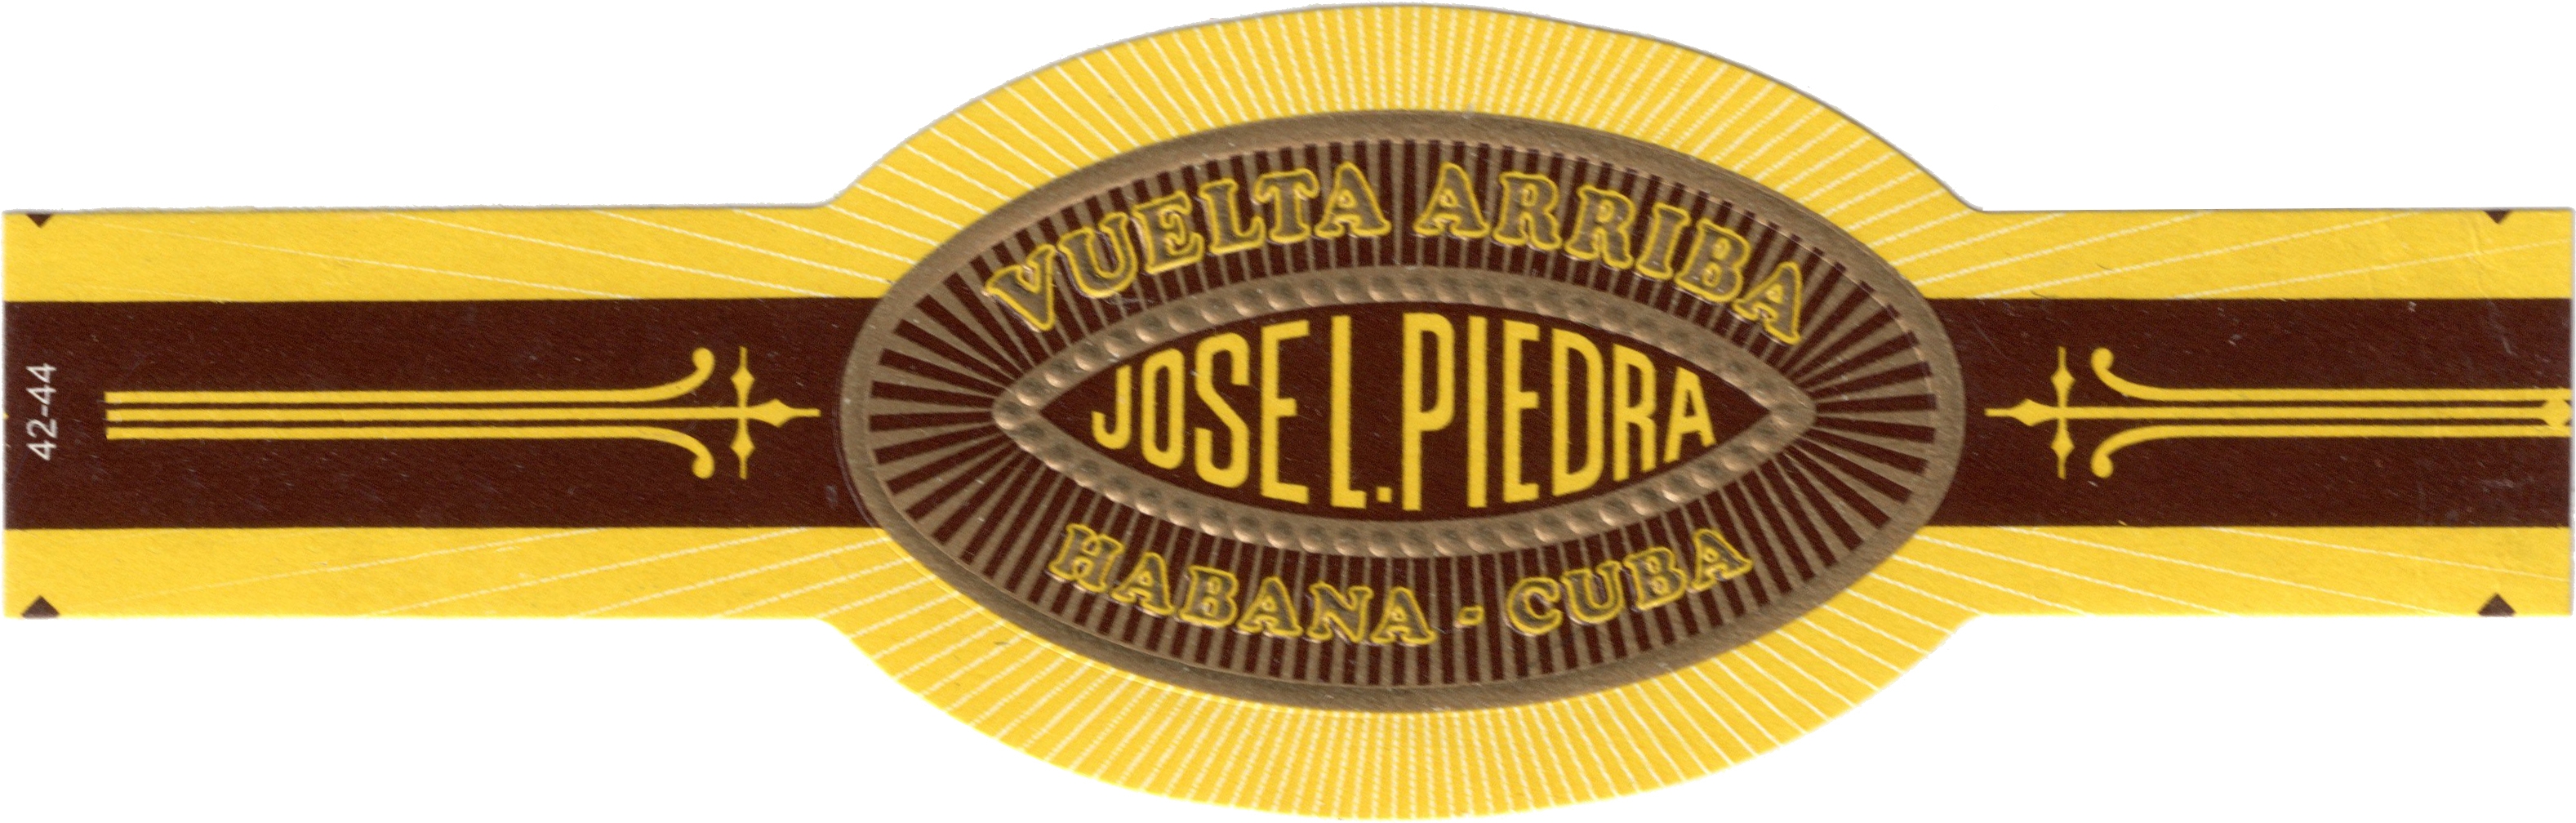 José L. Piedra.jpg